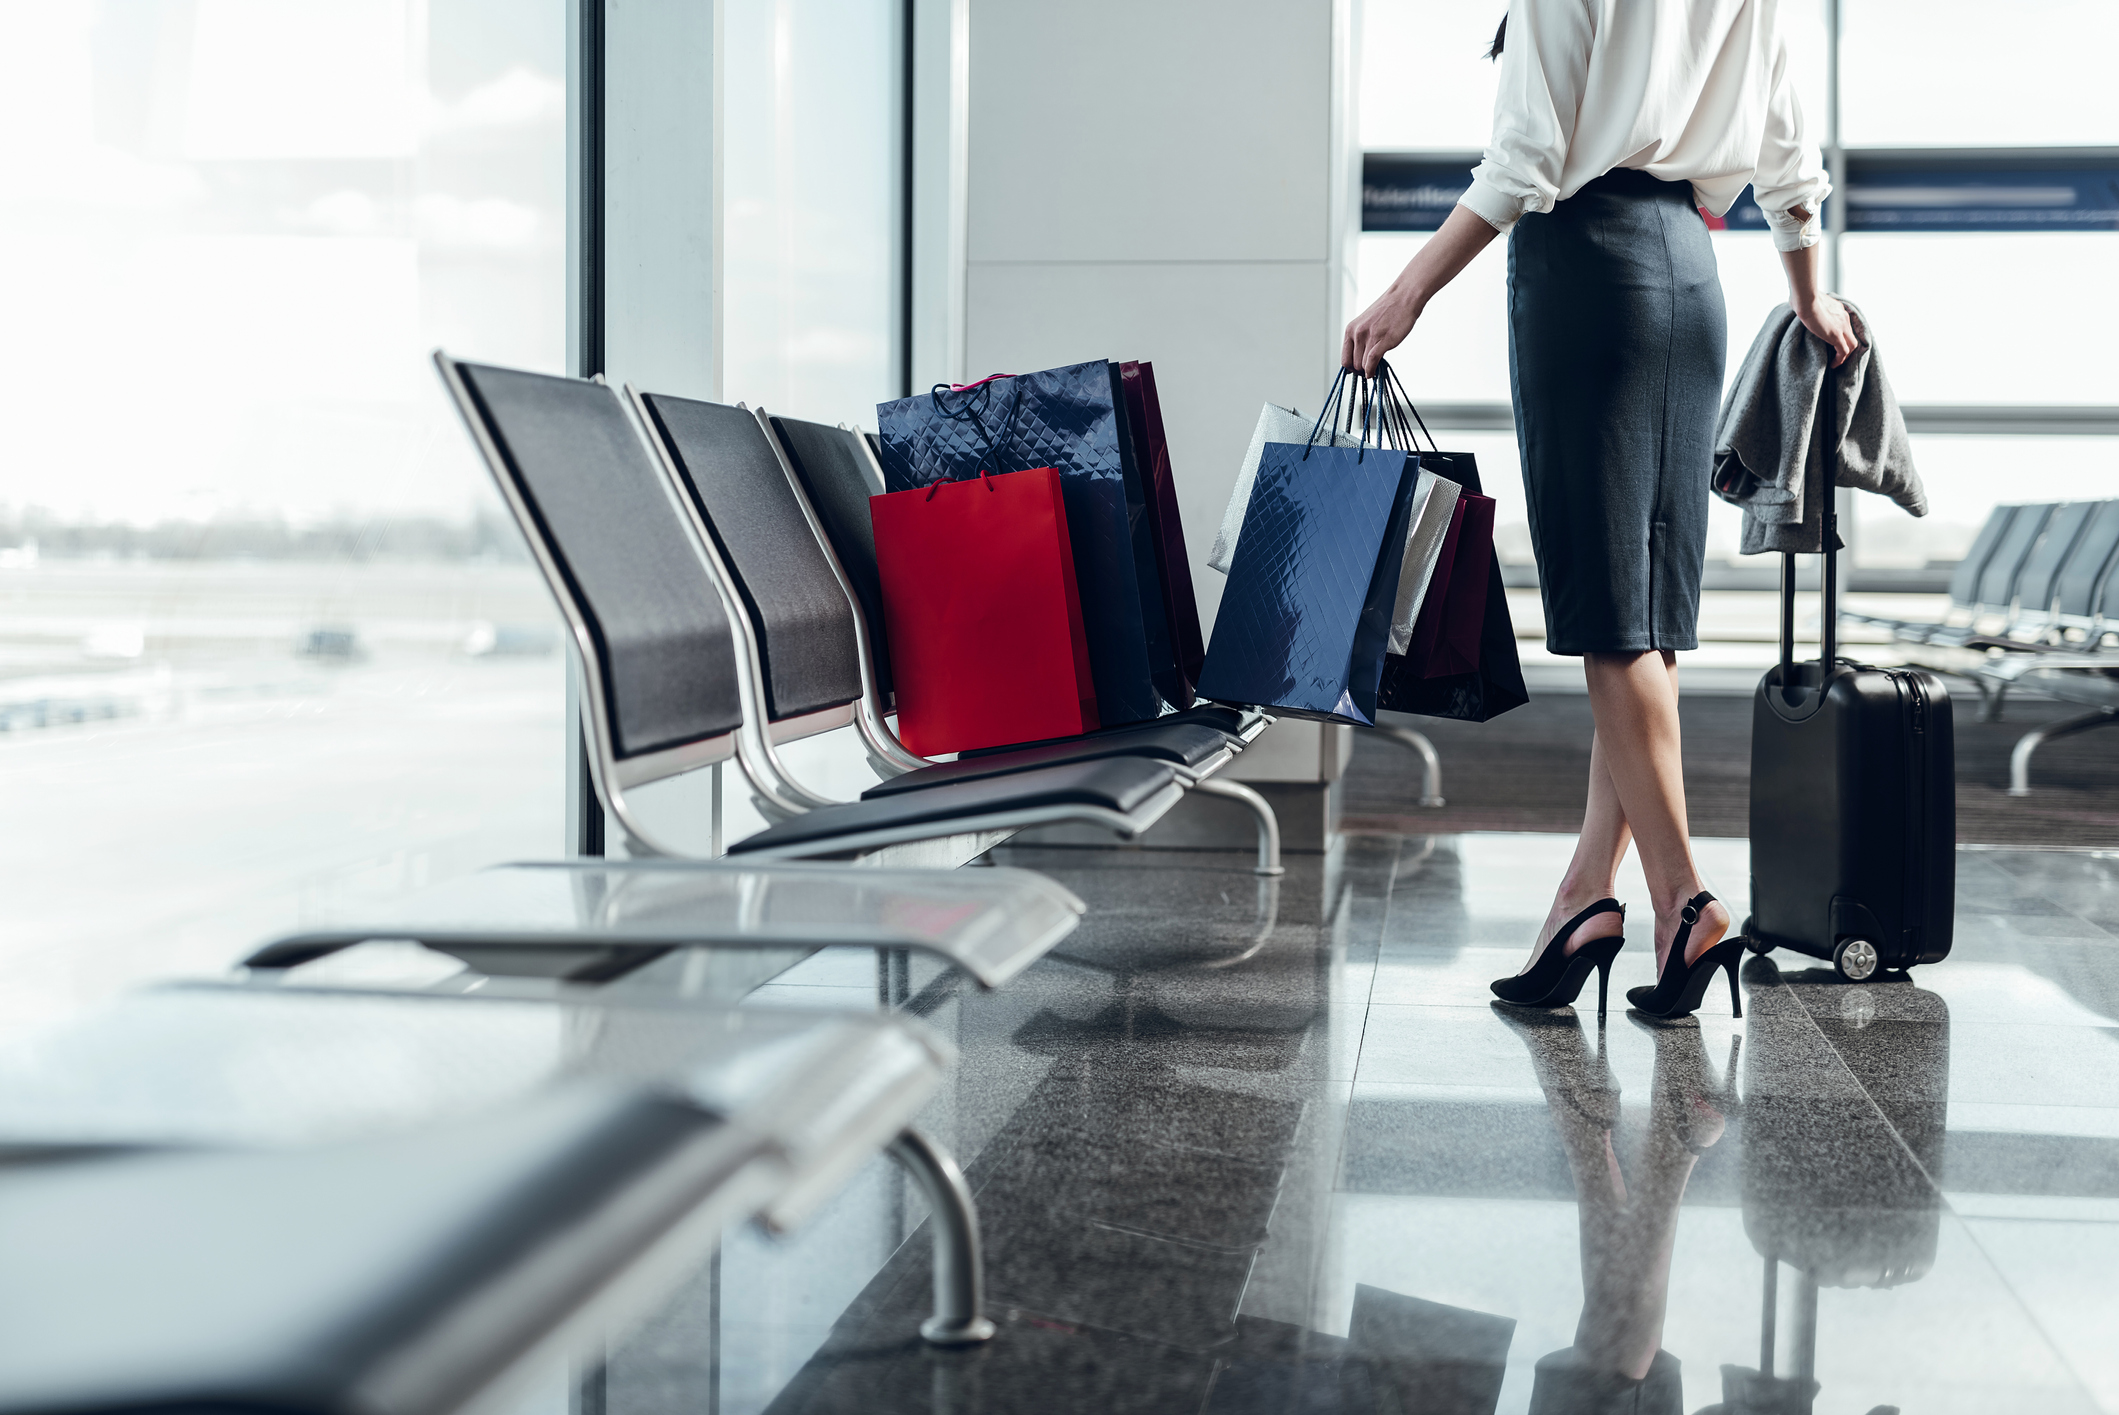 Las 5 cosas que debes evitar comprar en los aeropuertos